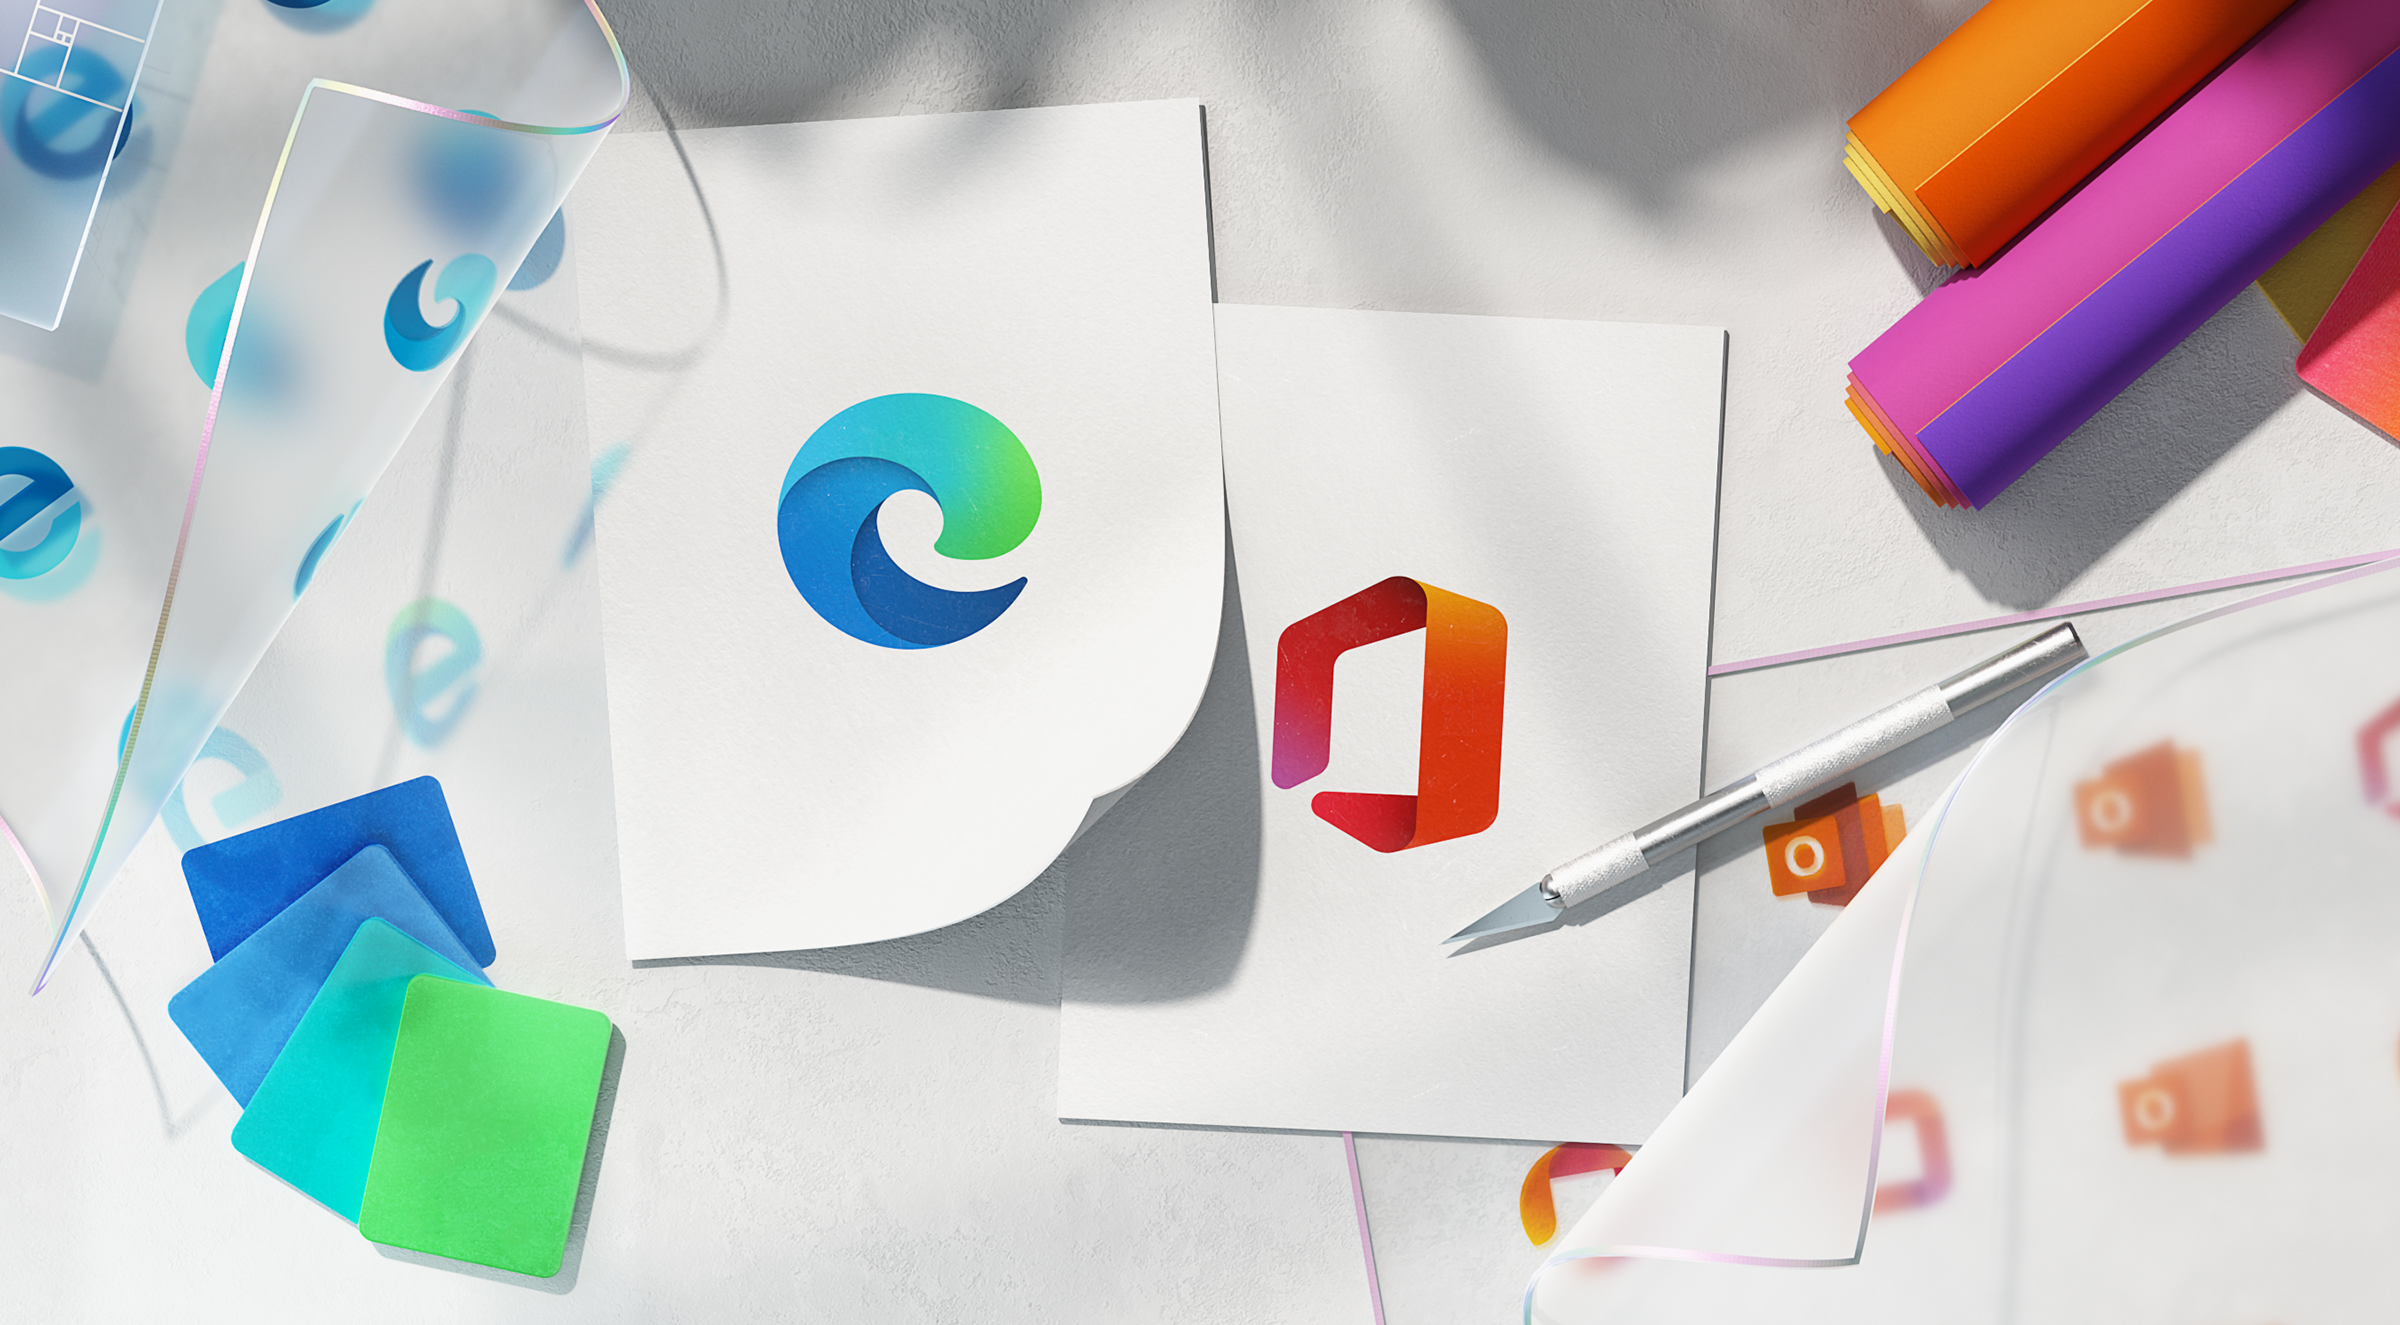 层次丰富的渐变色、柔美的曲线以及顺滑的动态效果，使得 Edge 和 Office 的 Logo 以及其他所有图标形成一个互联的整体。